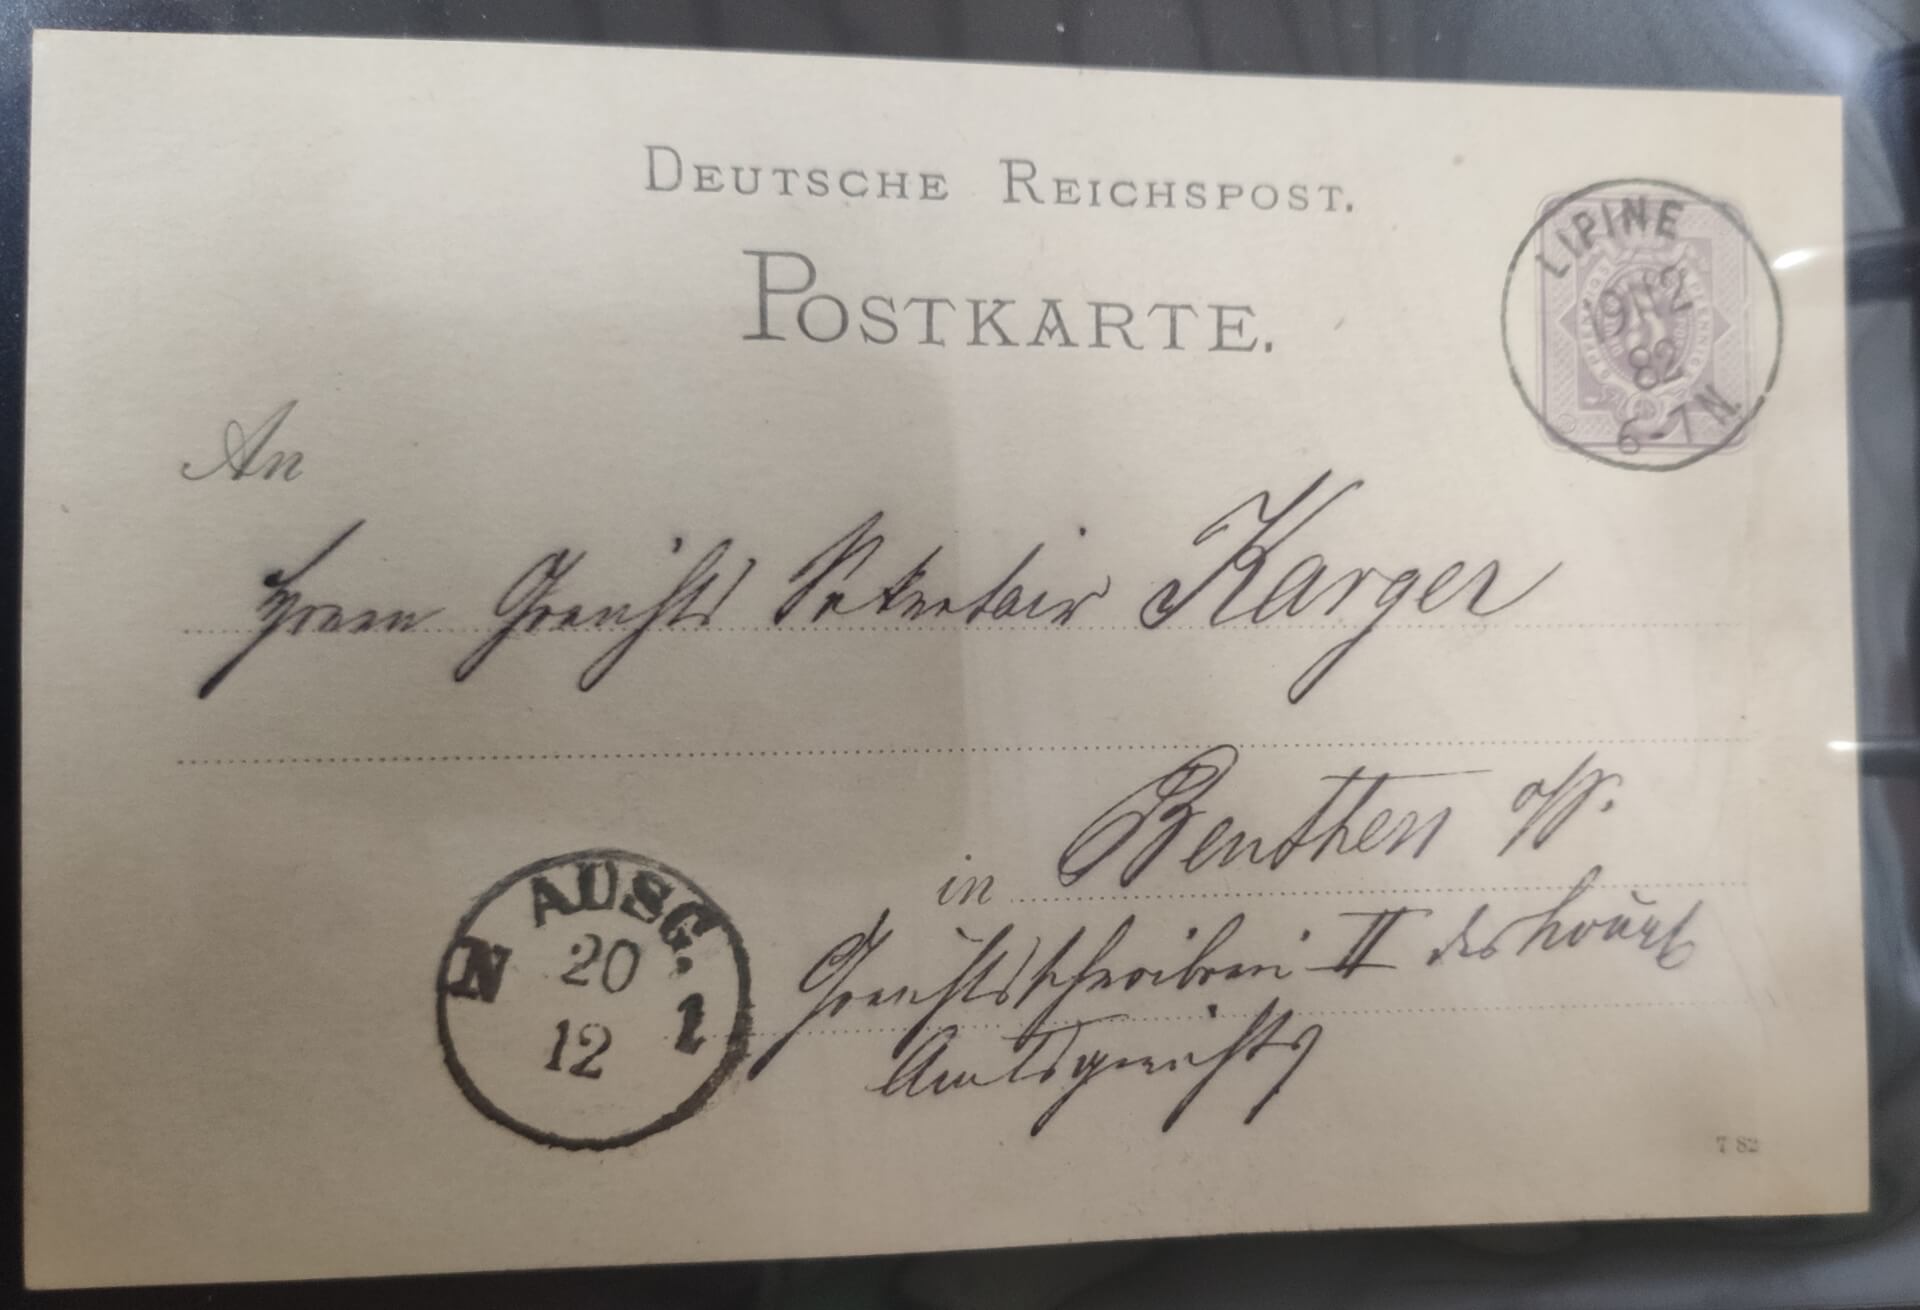 Lipiny karta pocztowa Deutsche Reichpost